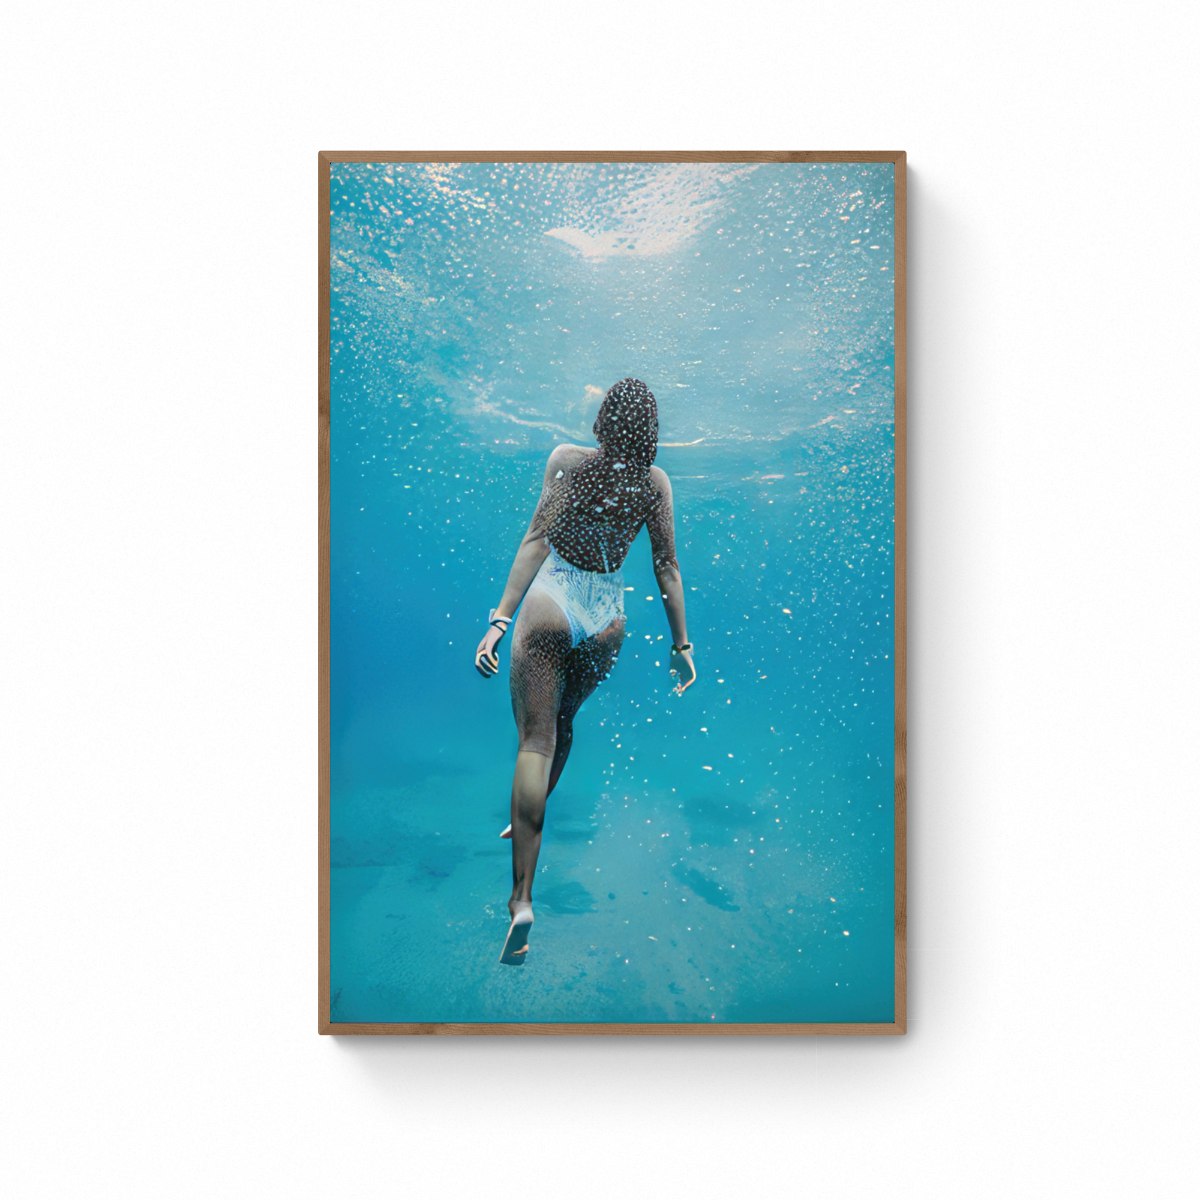 תמונת אישה צוללת בים מודפס על קנבס, מיסגור לבחירה, מוכן לתליה. קולקציית "חוף וים"